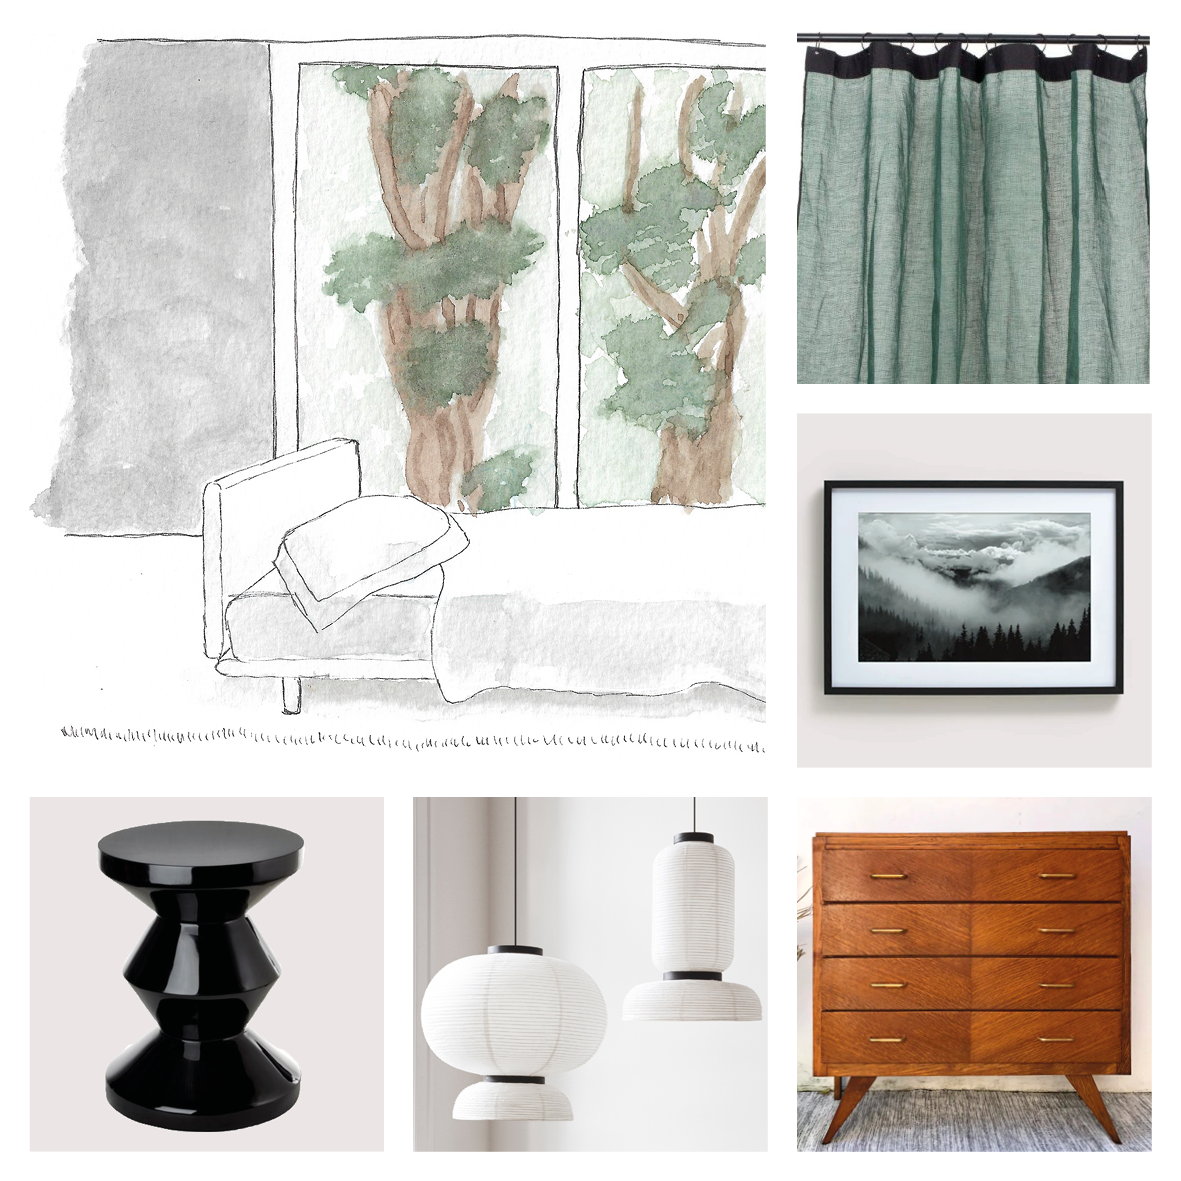 "Planche d'inspiration d'une chambre avec une aquarelle de Marion Tomasi, des rideaux verts, un tabouret tam tam, des suspensions en papier et une commode chinée"